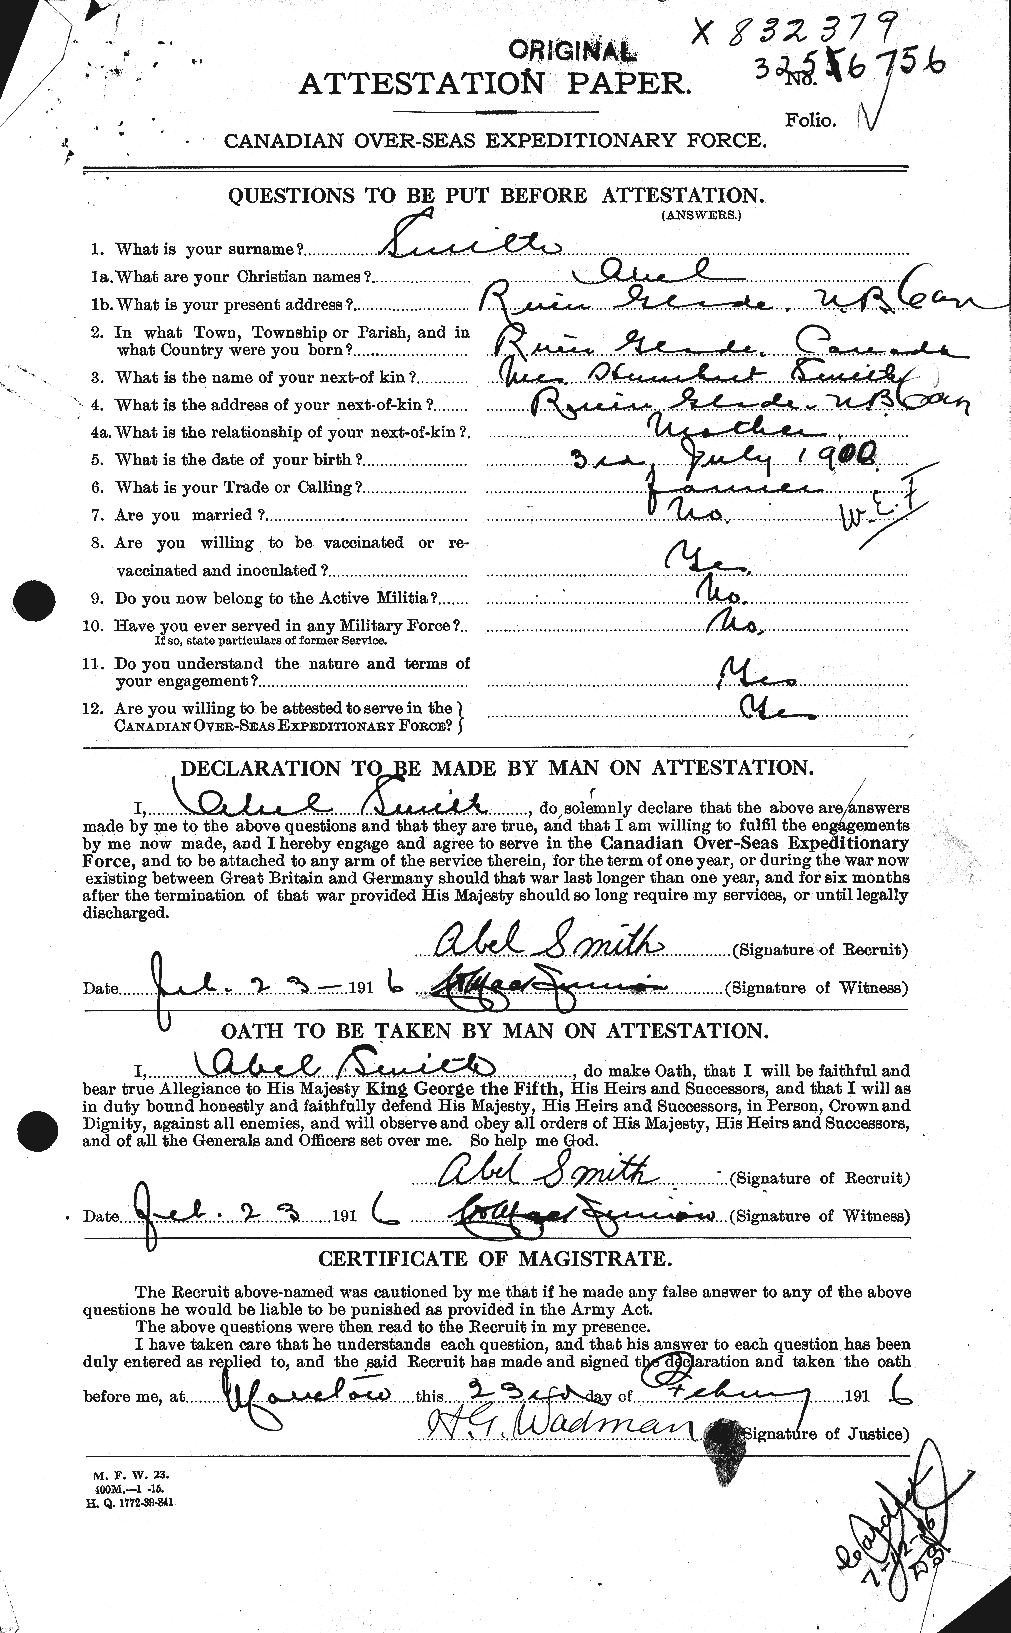 Dossiers du Personnel de la Première Guerre mondiale - CEC 099478a